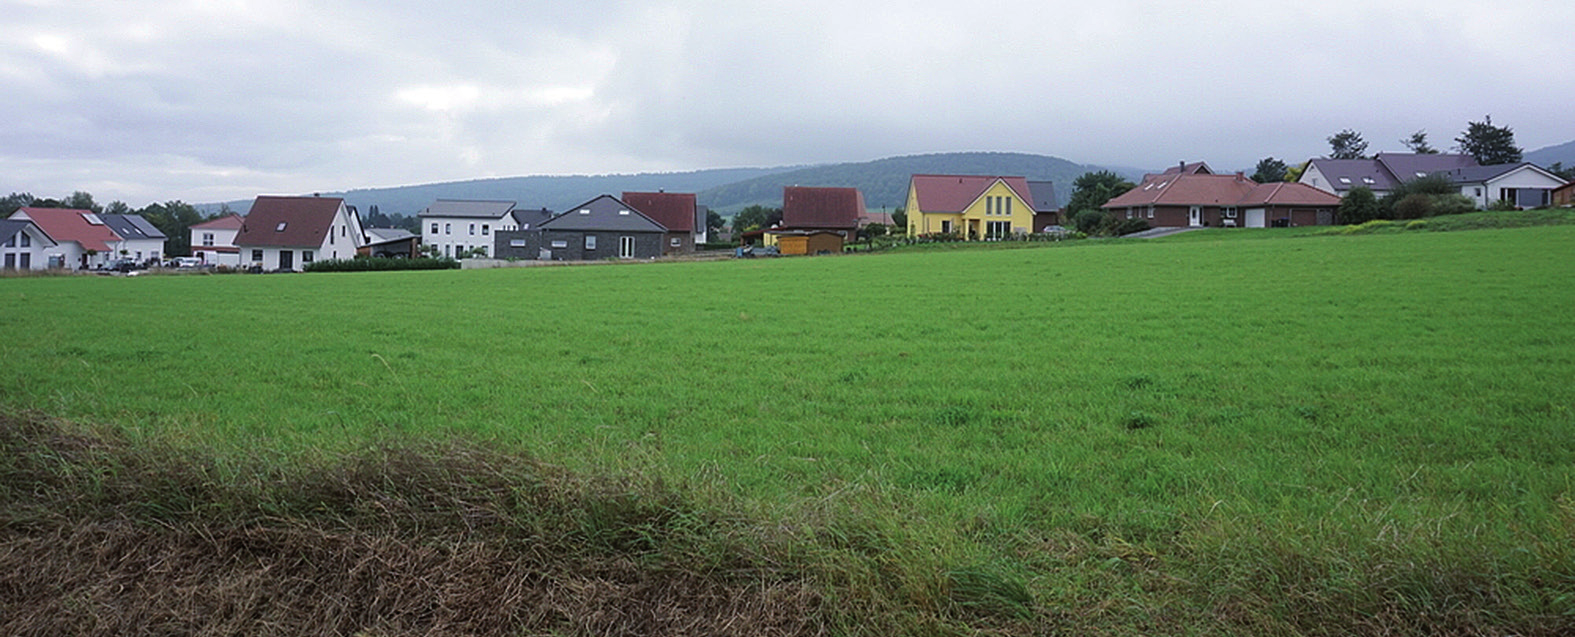 Blick auf den Ort: Insbesondere am Kranzberg kann und soll Bakede weiter wachsen. FOTO: RATHMANN